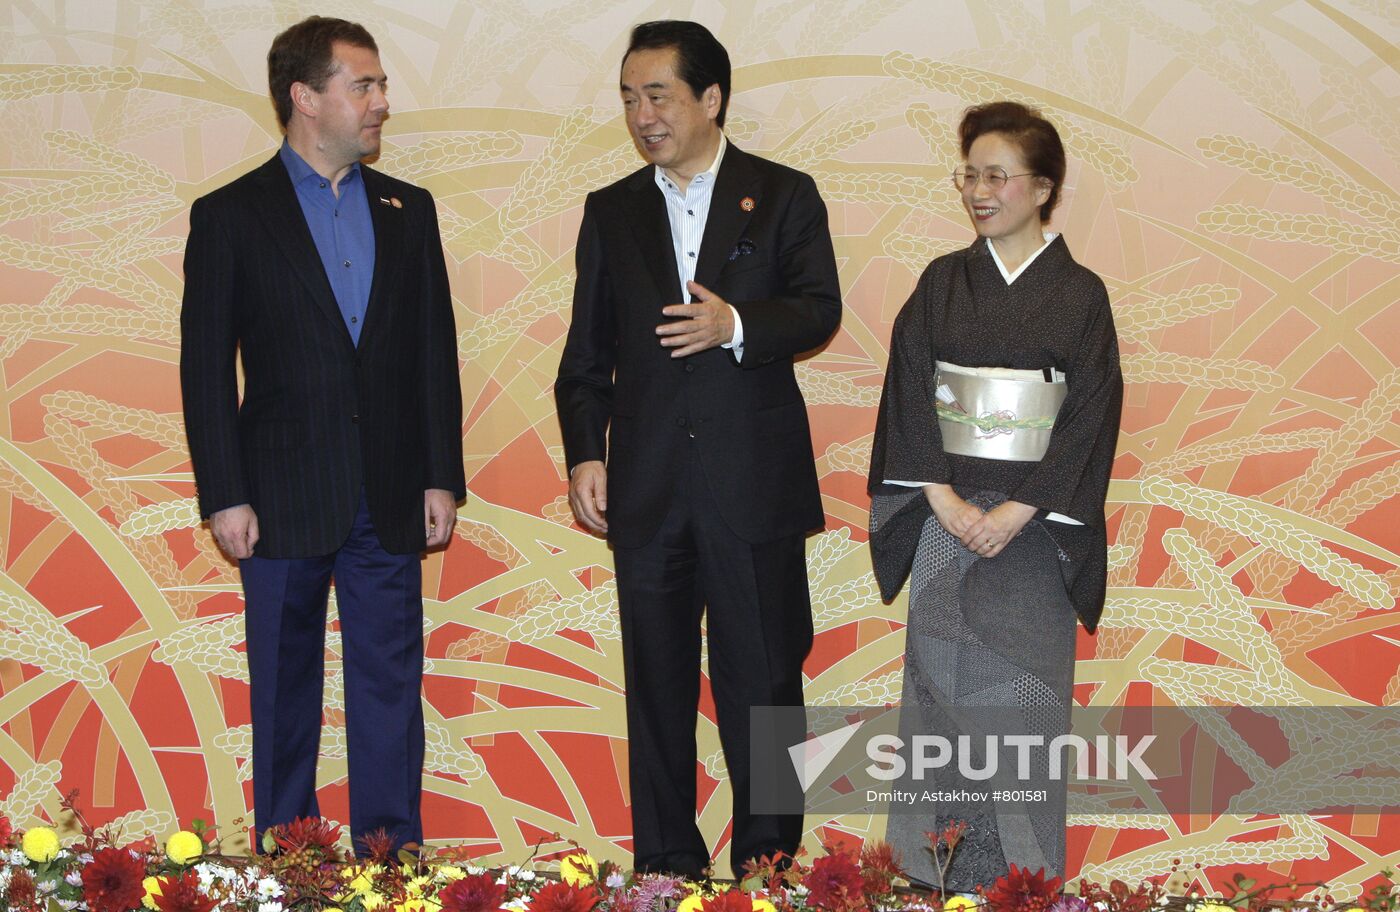 Dmitry Medvedev visits APEC summit in Japan